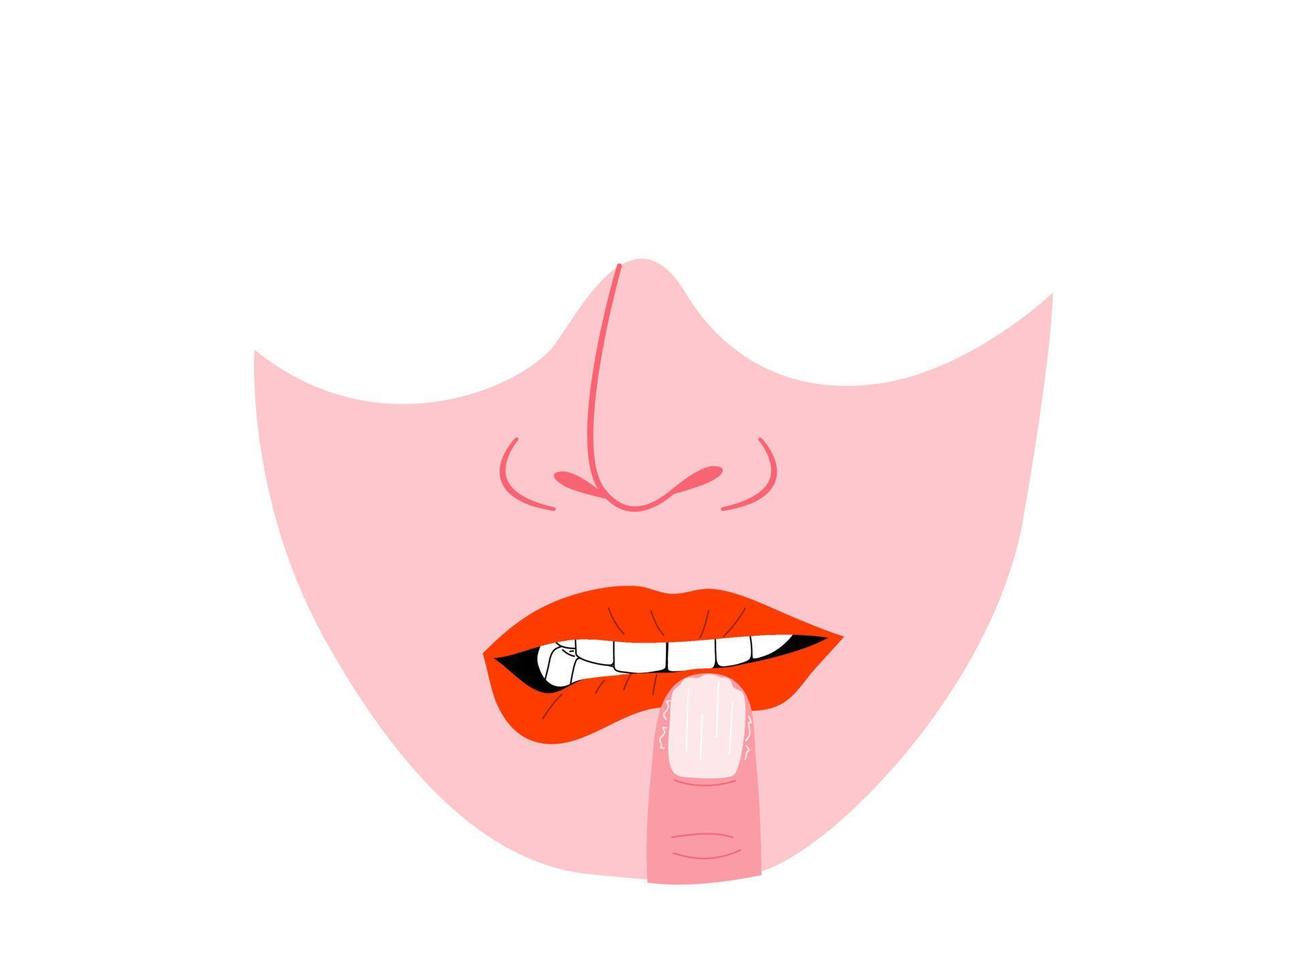 isolé du visage humain montrant le trouble mordant les lèvres et les ongles, les comportements répétitifs centrés sur le corps symptôme bfrbs. illustration vectorielle plane. vecteur